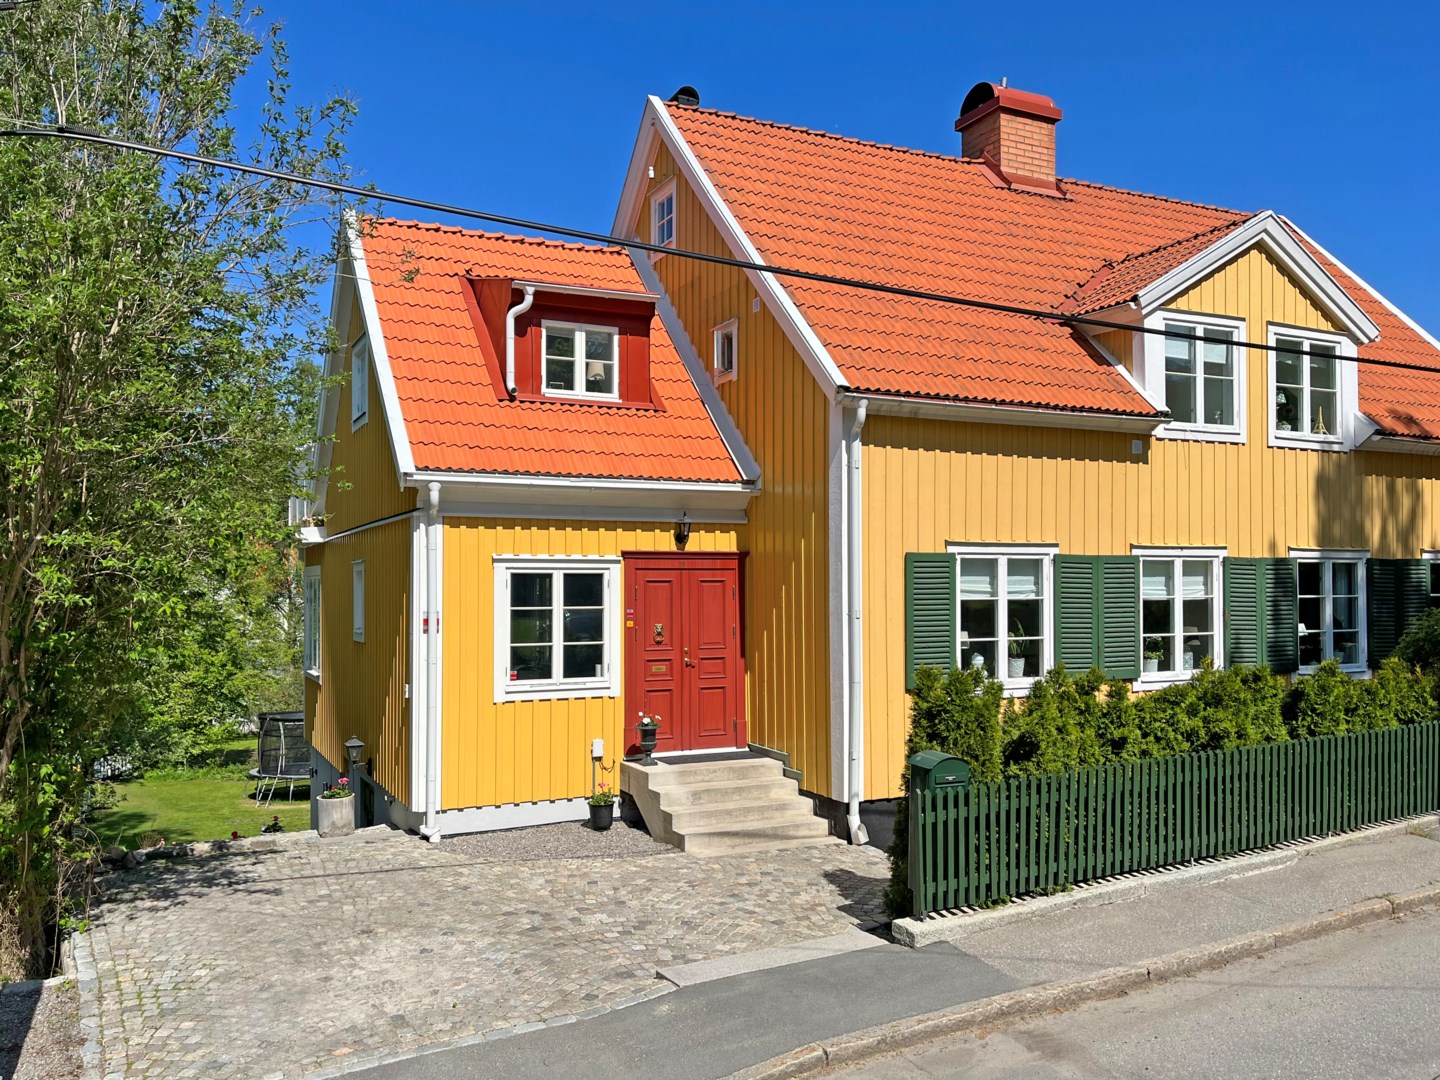 Bostadsbild från Önskeringsvägen 19, Såld i Bromma - Smedslätten, Stockholm